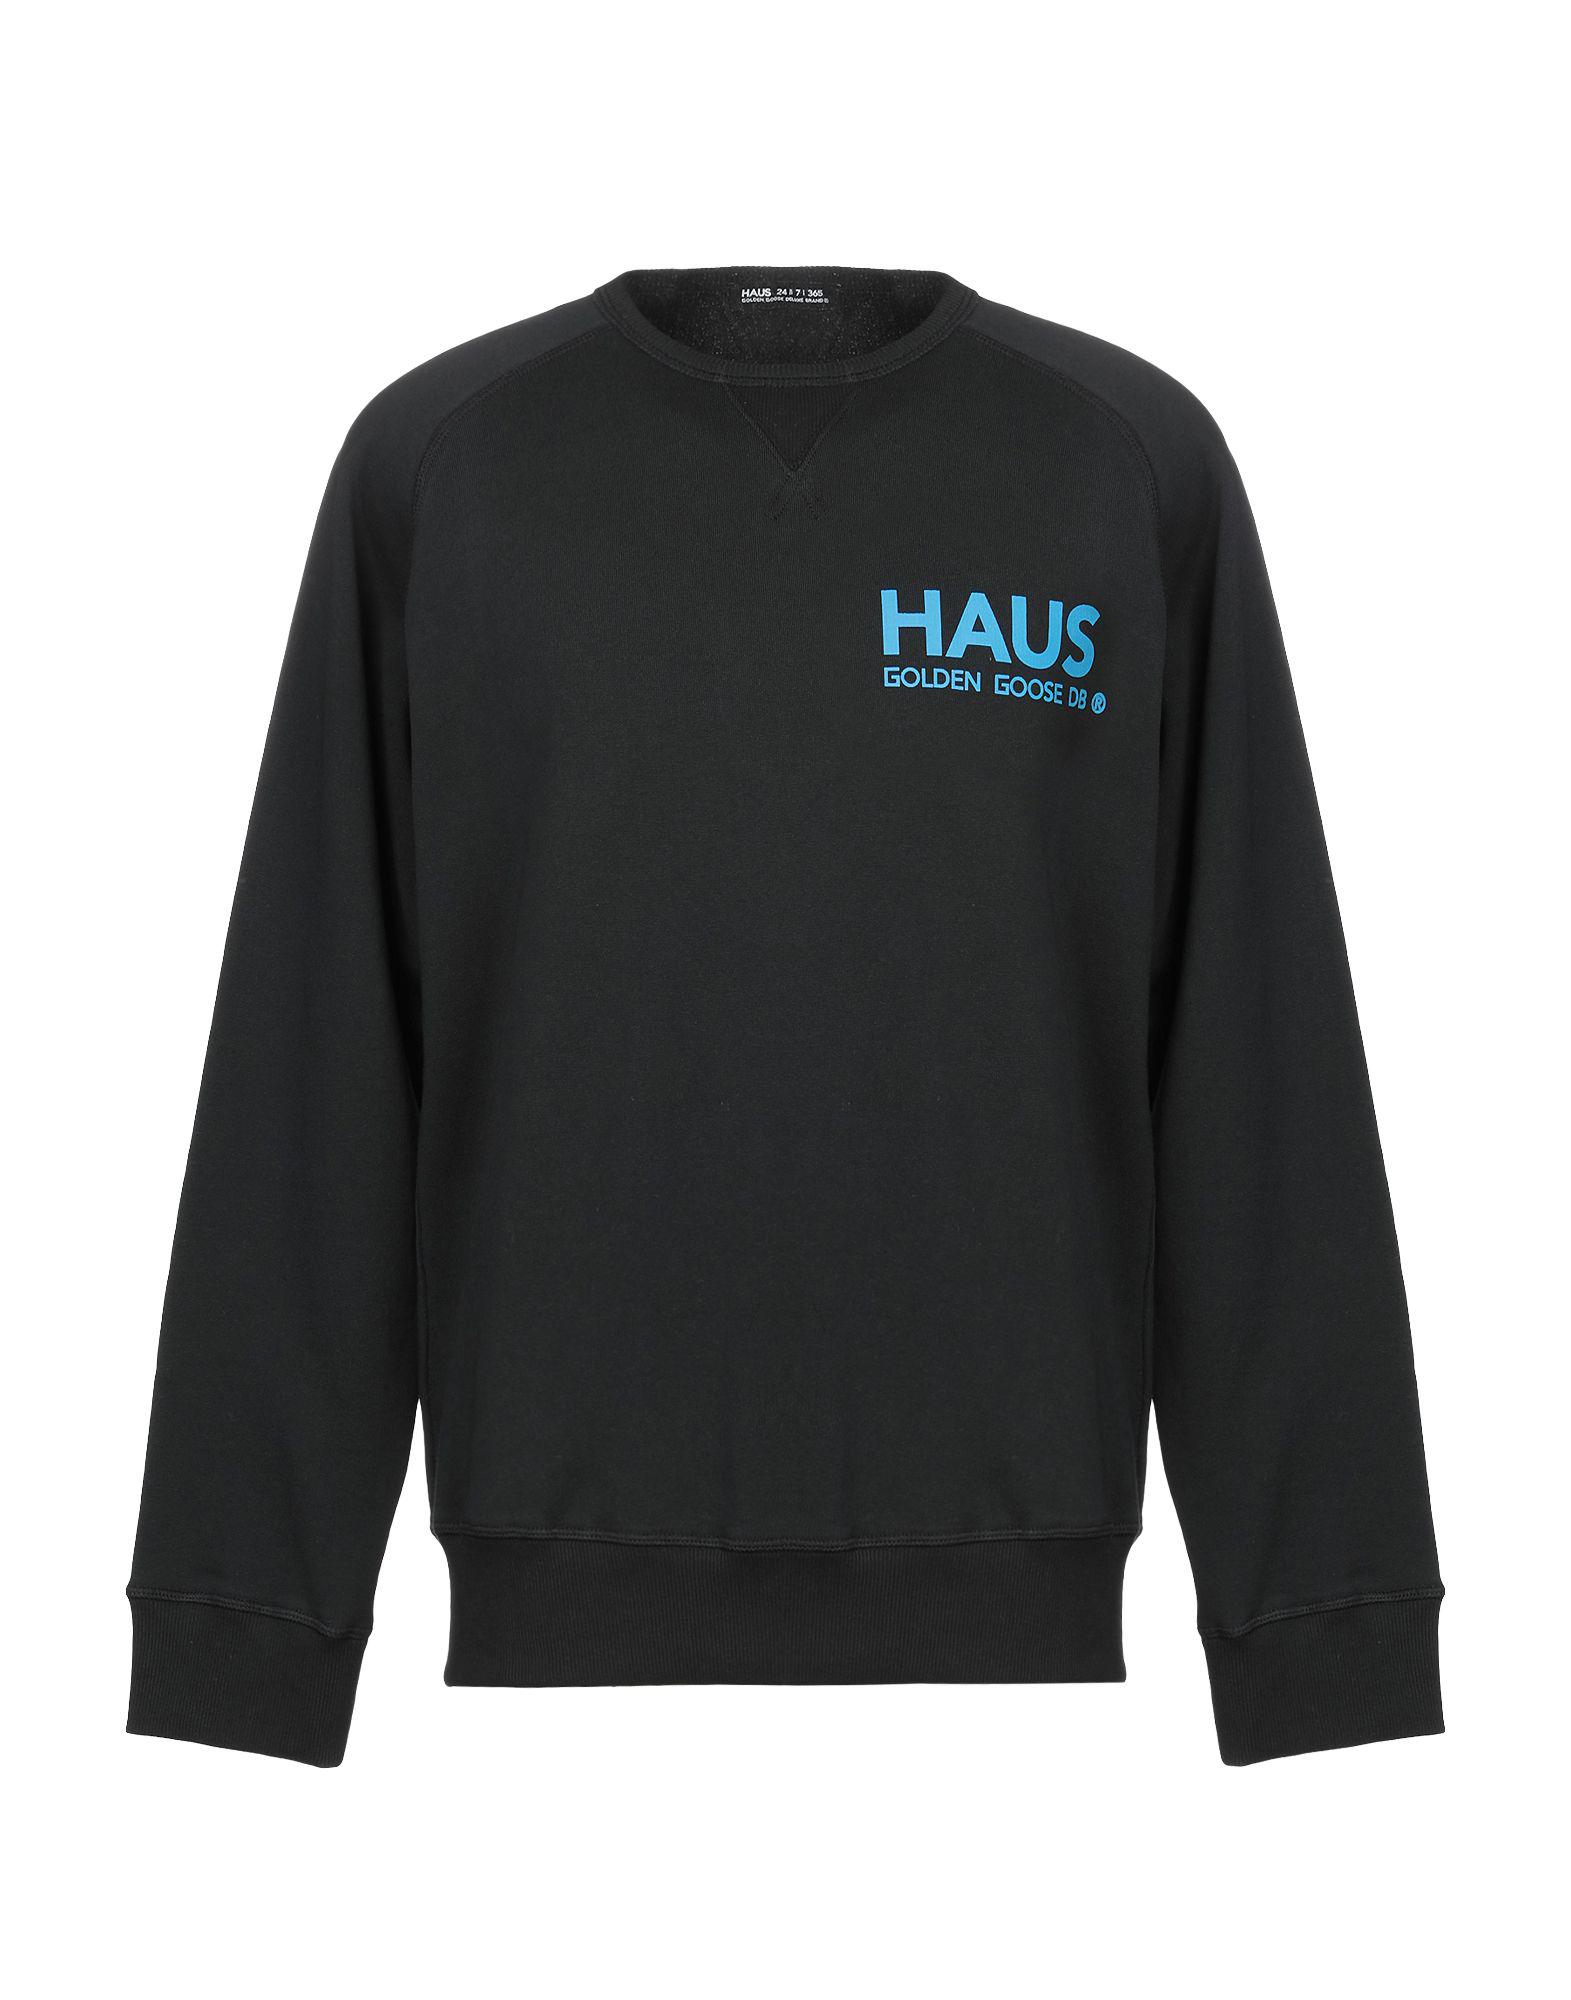 Haus By Golden Goose Deluxe Brand Sweatshirt in Black for Men - Lyst